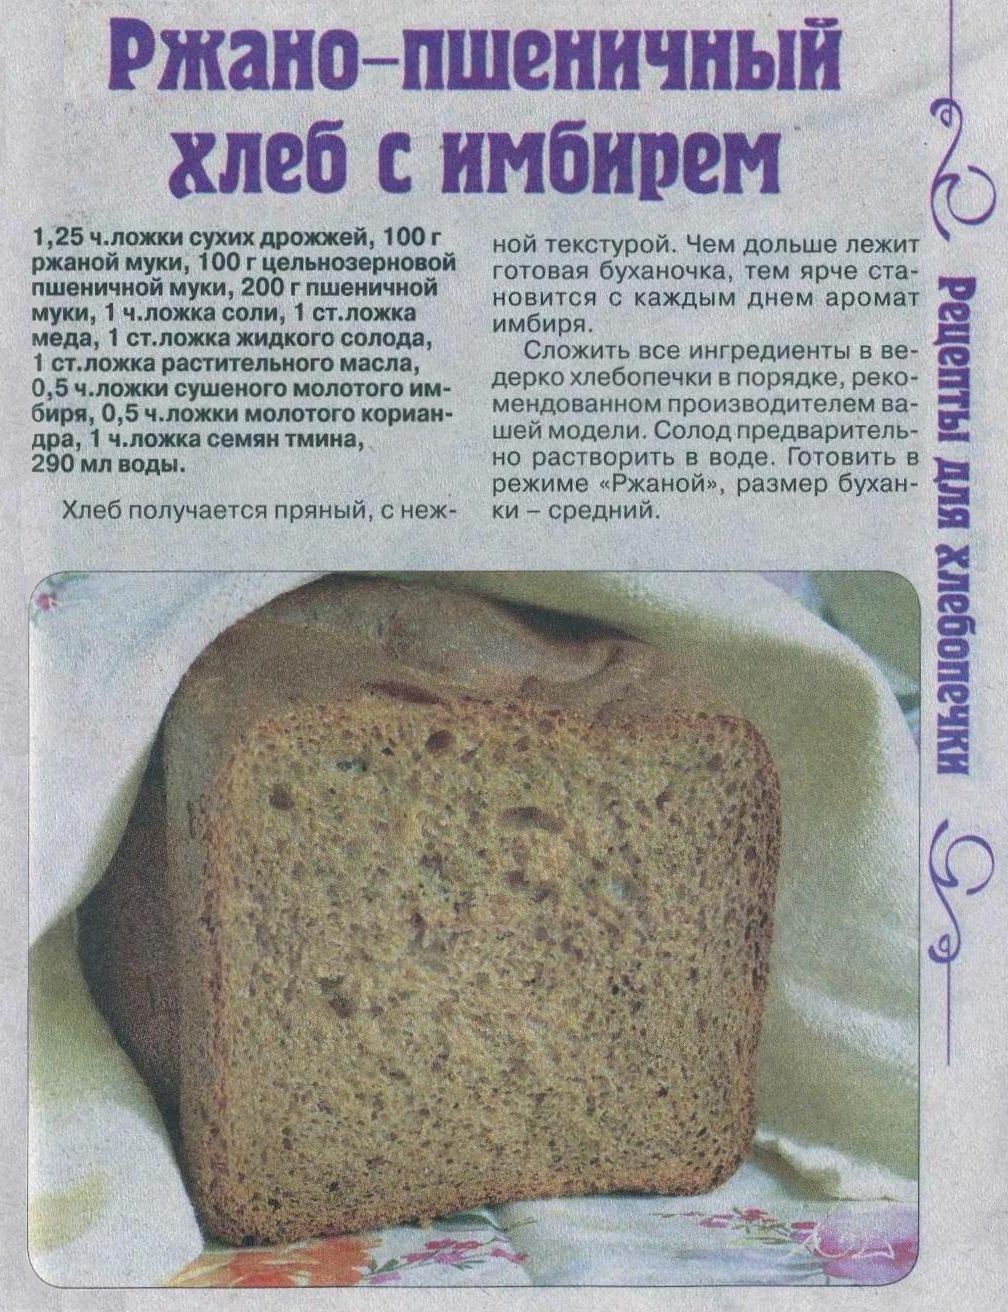 Рецепты пошагово хлеба в хлебопечке. Рецепт хлеба в хлебопечке. Тесто на хлеб в хлебопечке. Домашний хлеб в хлебопечке. Рецептура ржаного хлеба.